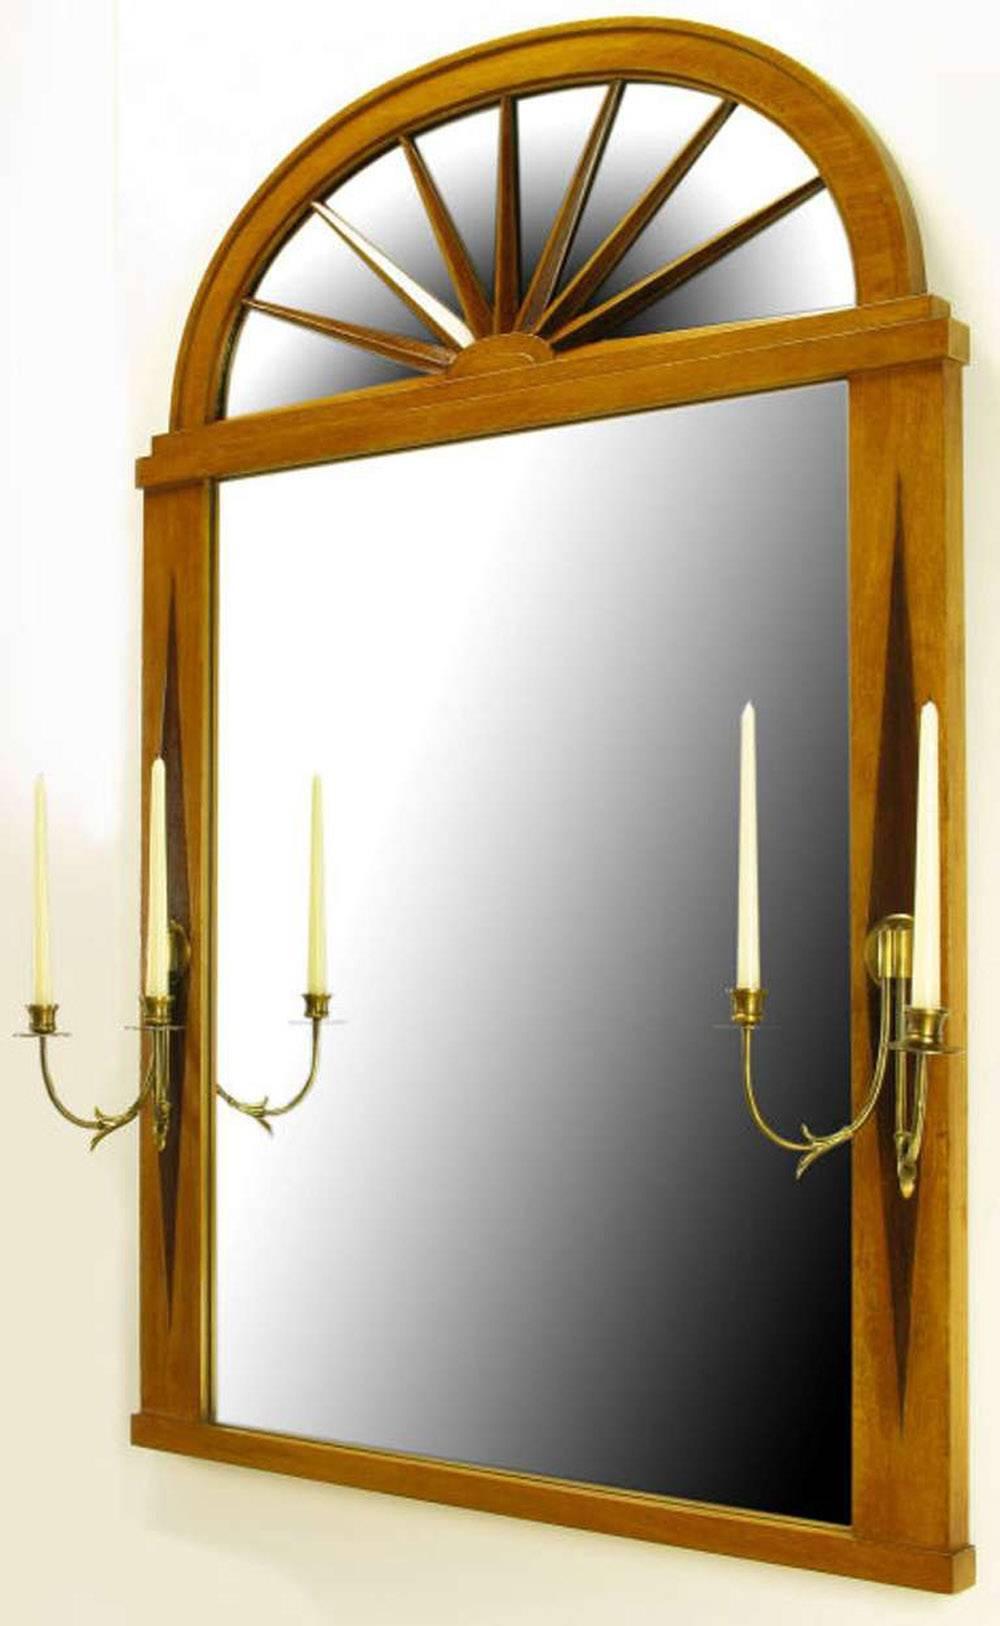 Grosfeld House Empire-Stil Spiegel mit gewölbter Oberseite geschnitztem Holz Sunburst über Spiegel. Gerahmt in gebleichtem Mahagoni mit kontrastierender rautenförmiger Einlage aus dunklem Walnussholz. In der Mitte jeder Raute befindet sich ein